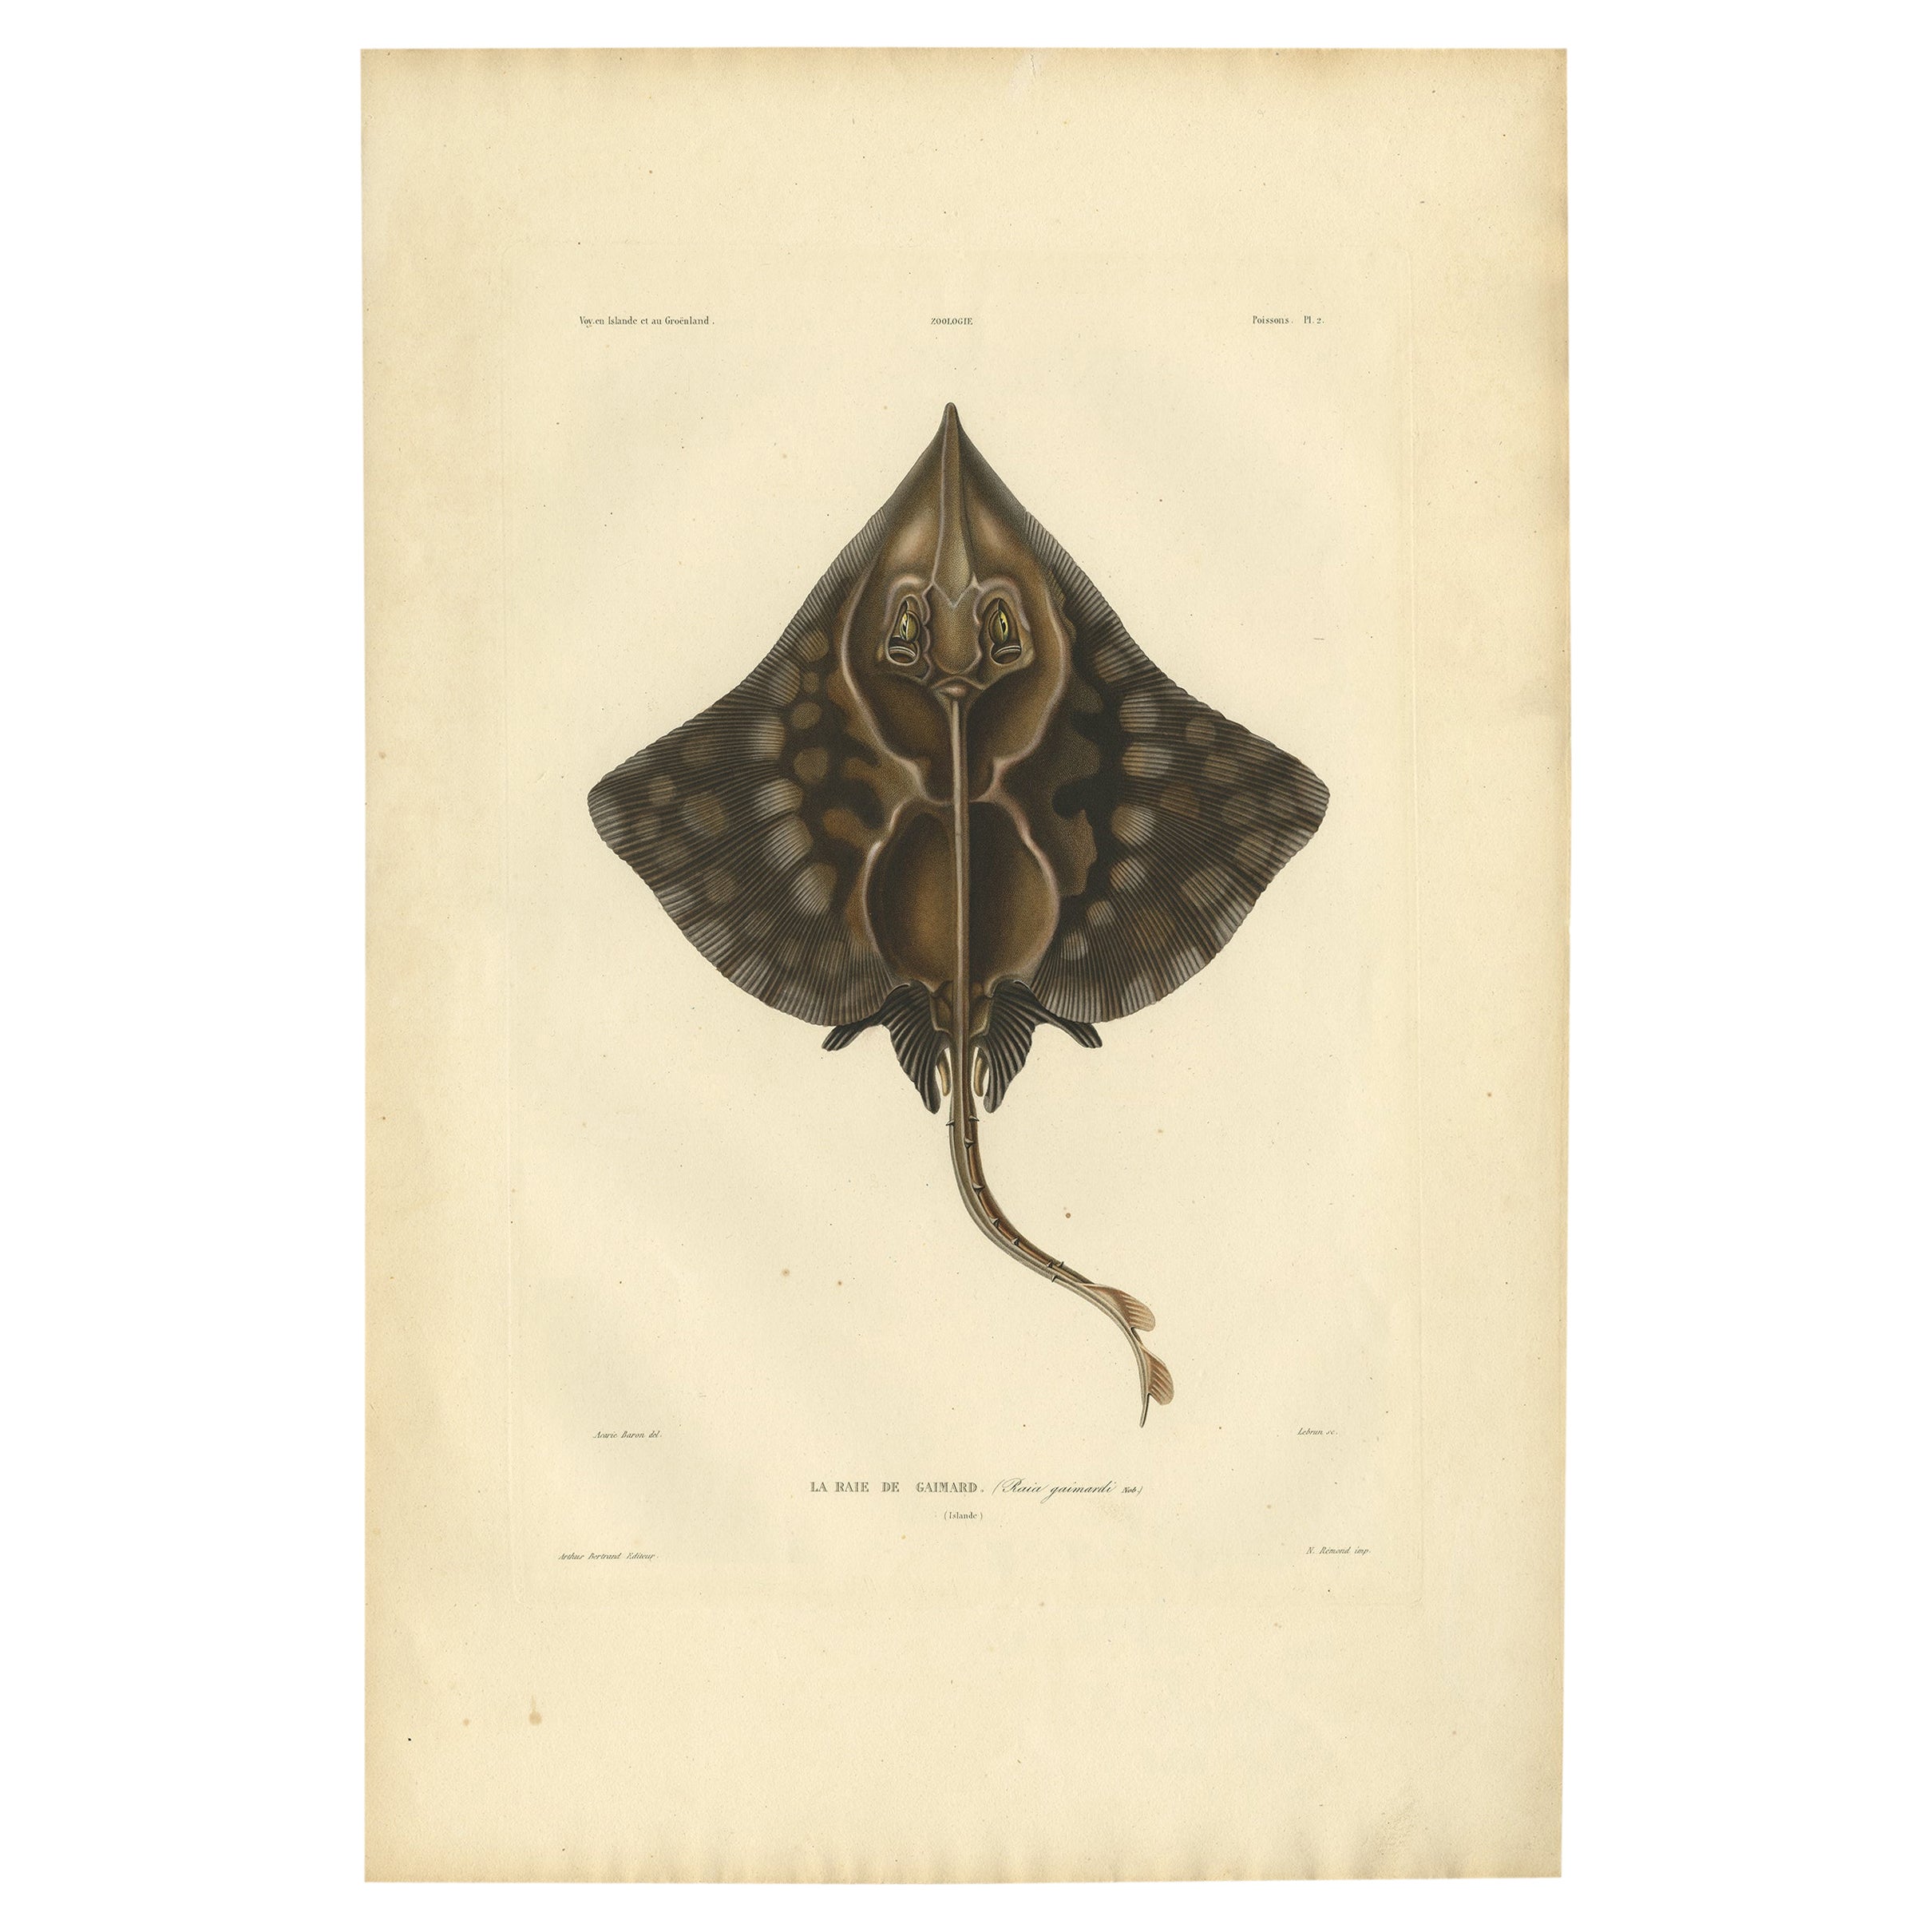 Rare impression de poisson antique colorée à la main du Ray de Gaimard, 1842